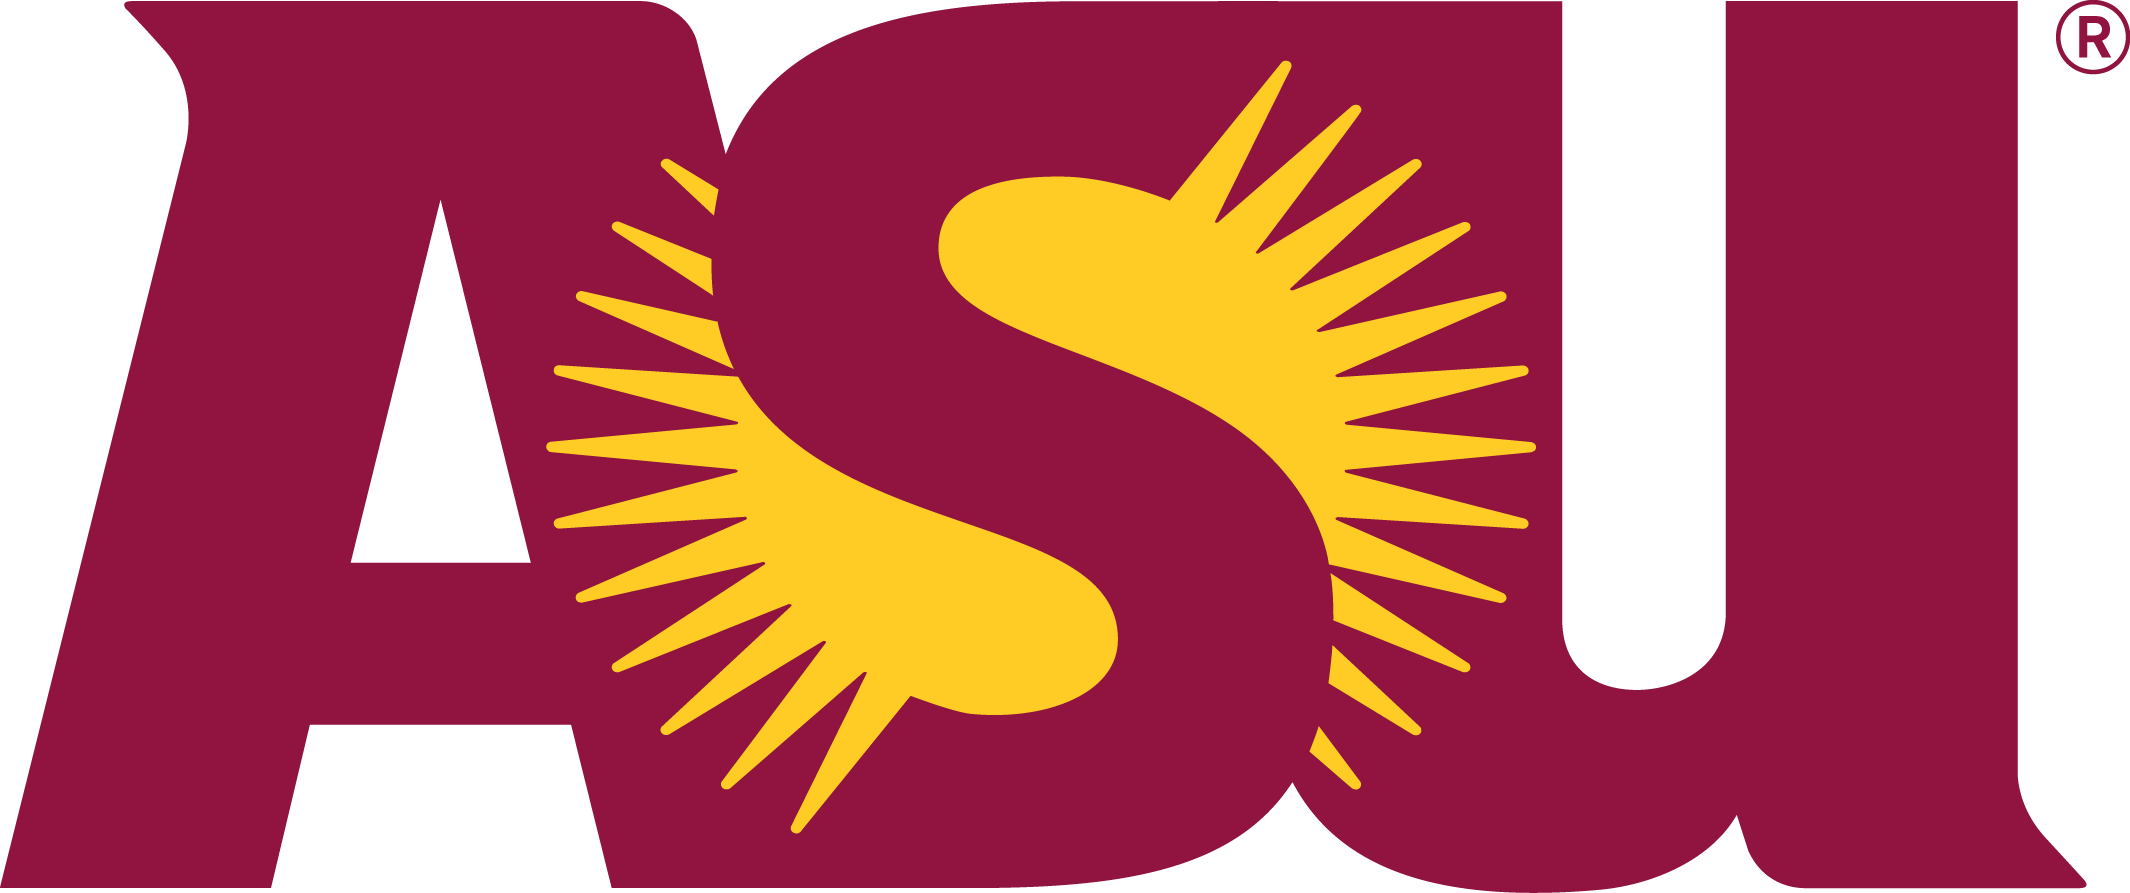 ASU Logo.png